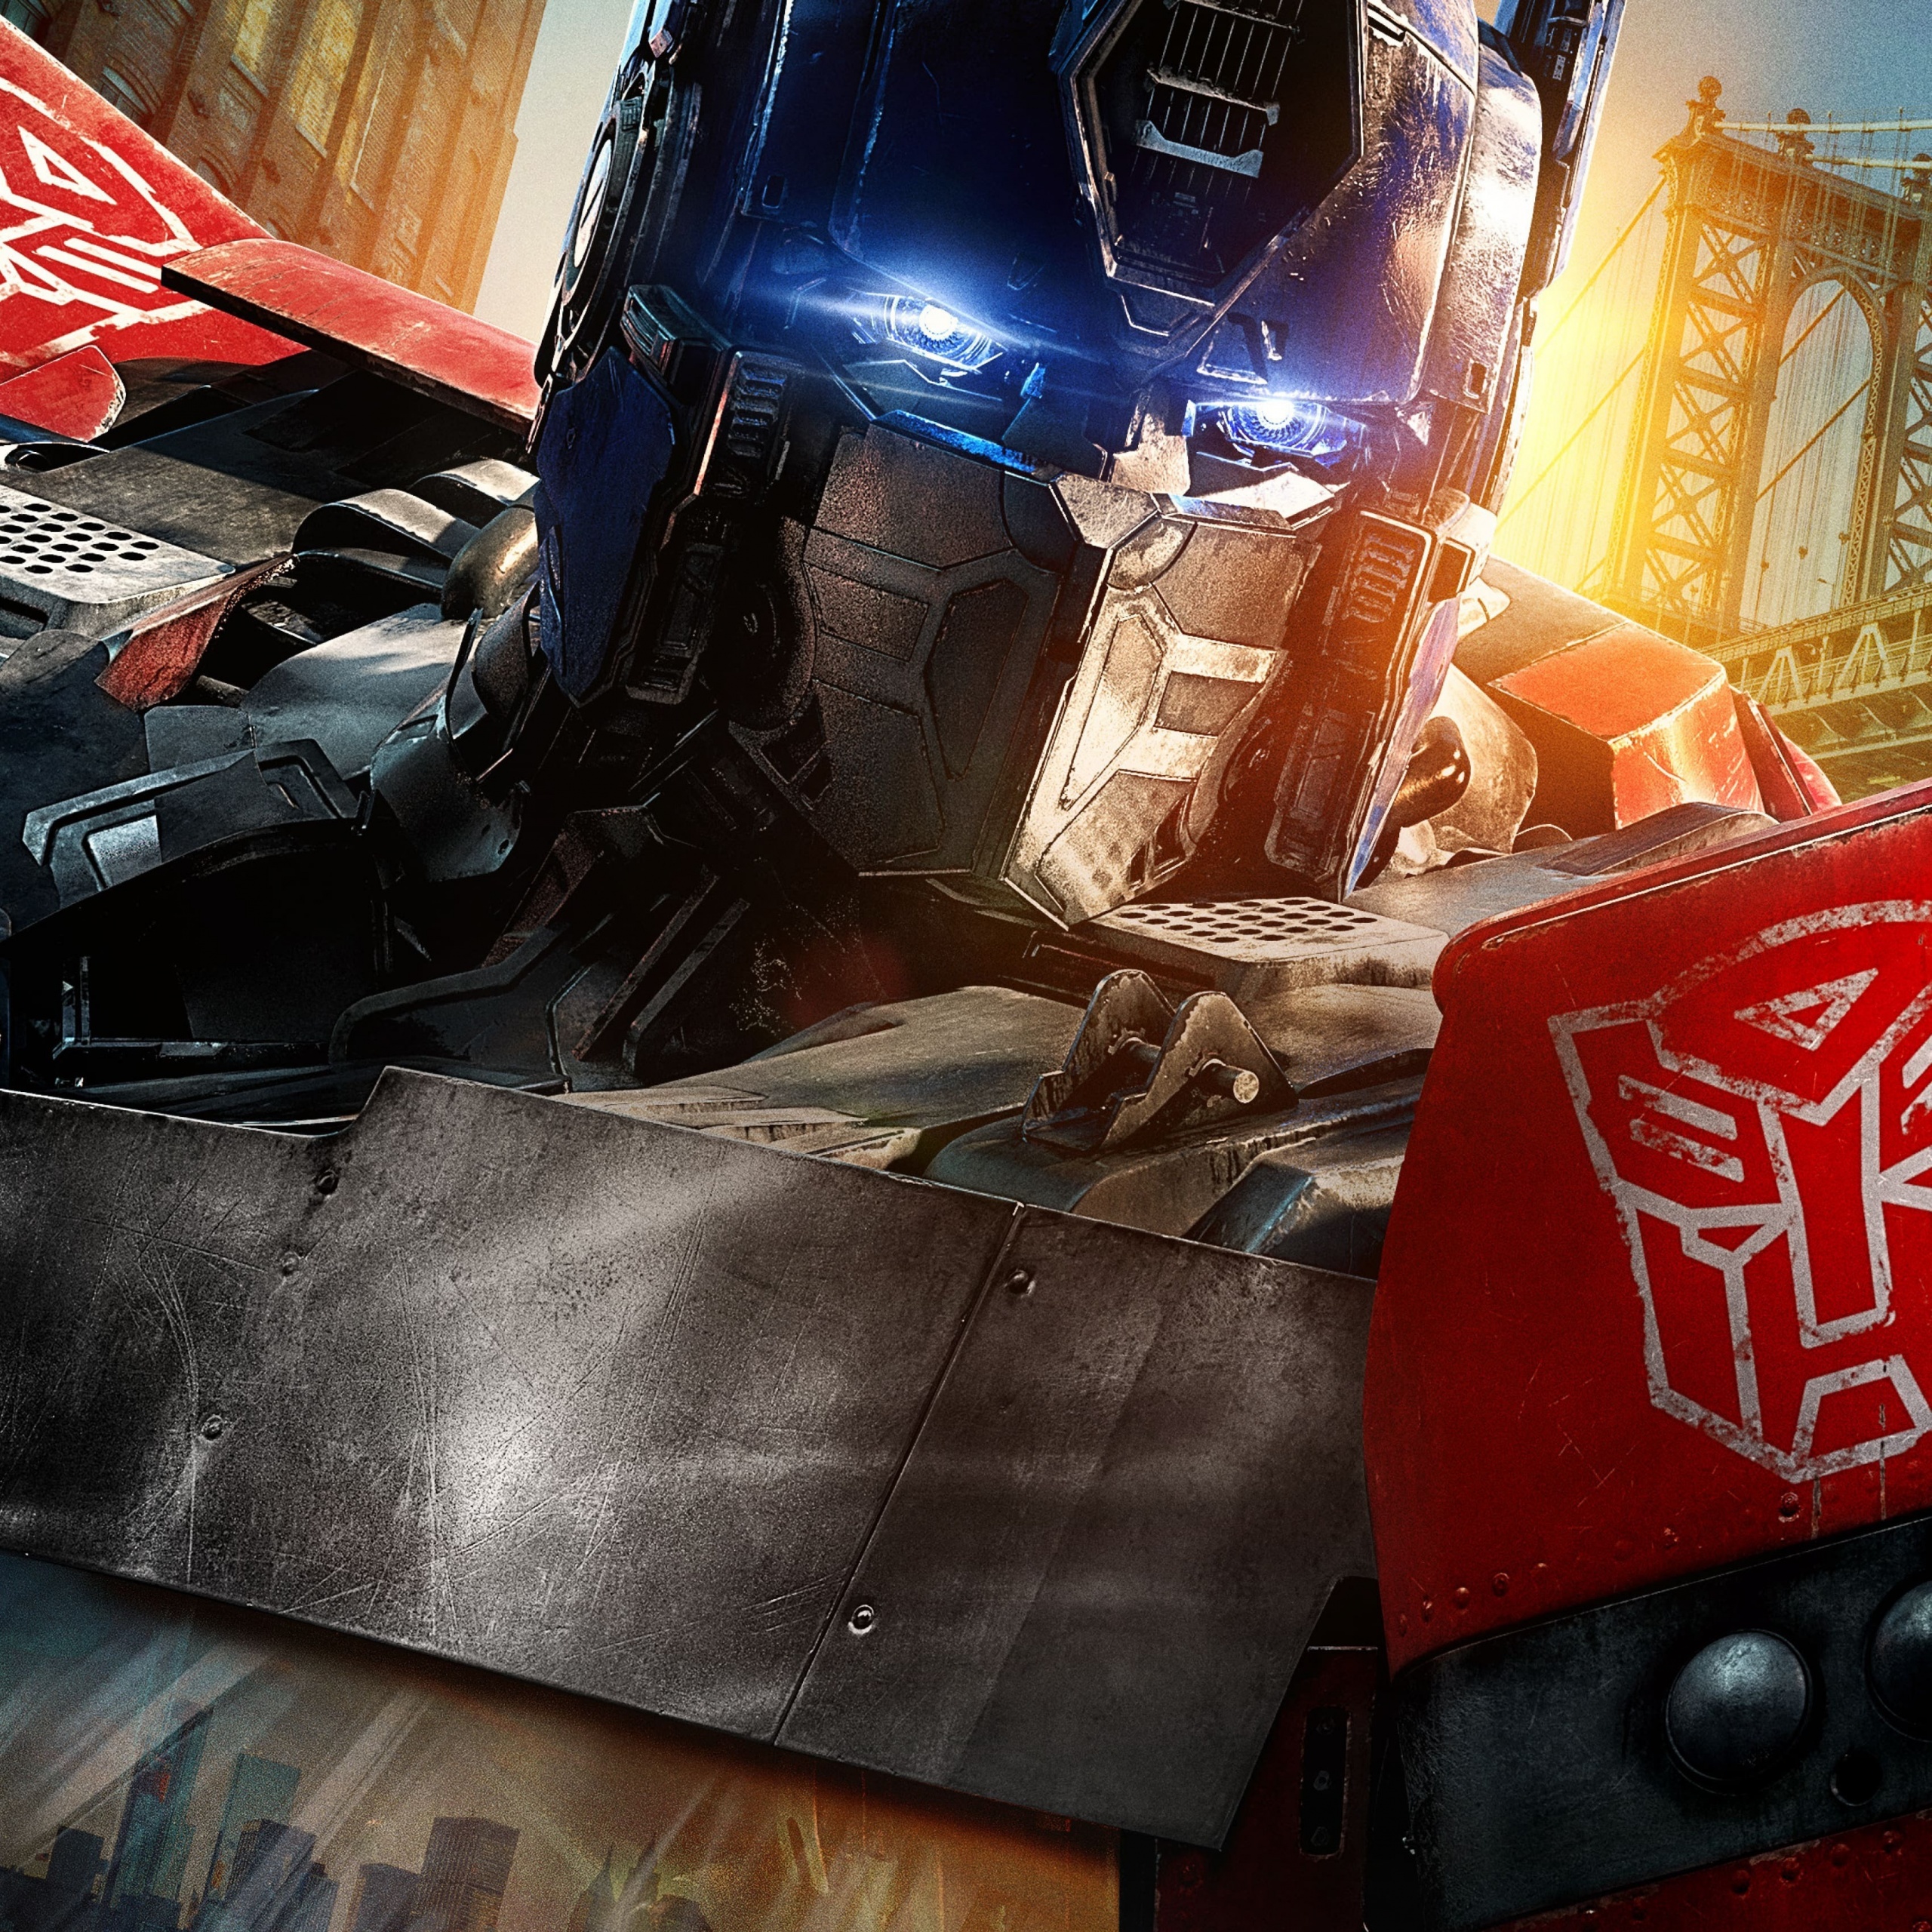 transformers wallpaper optimus prime